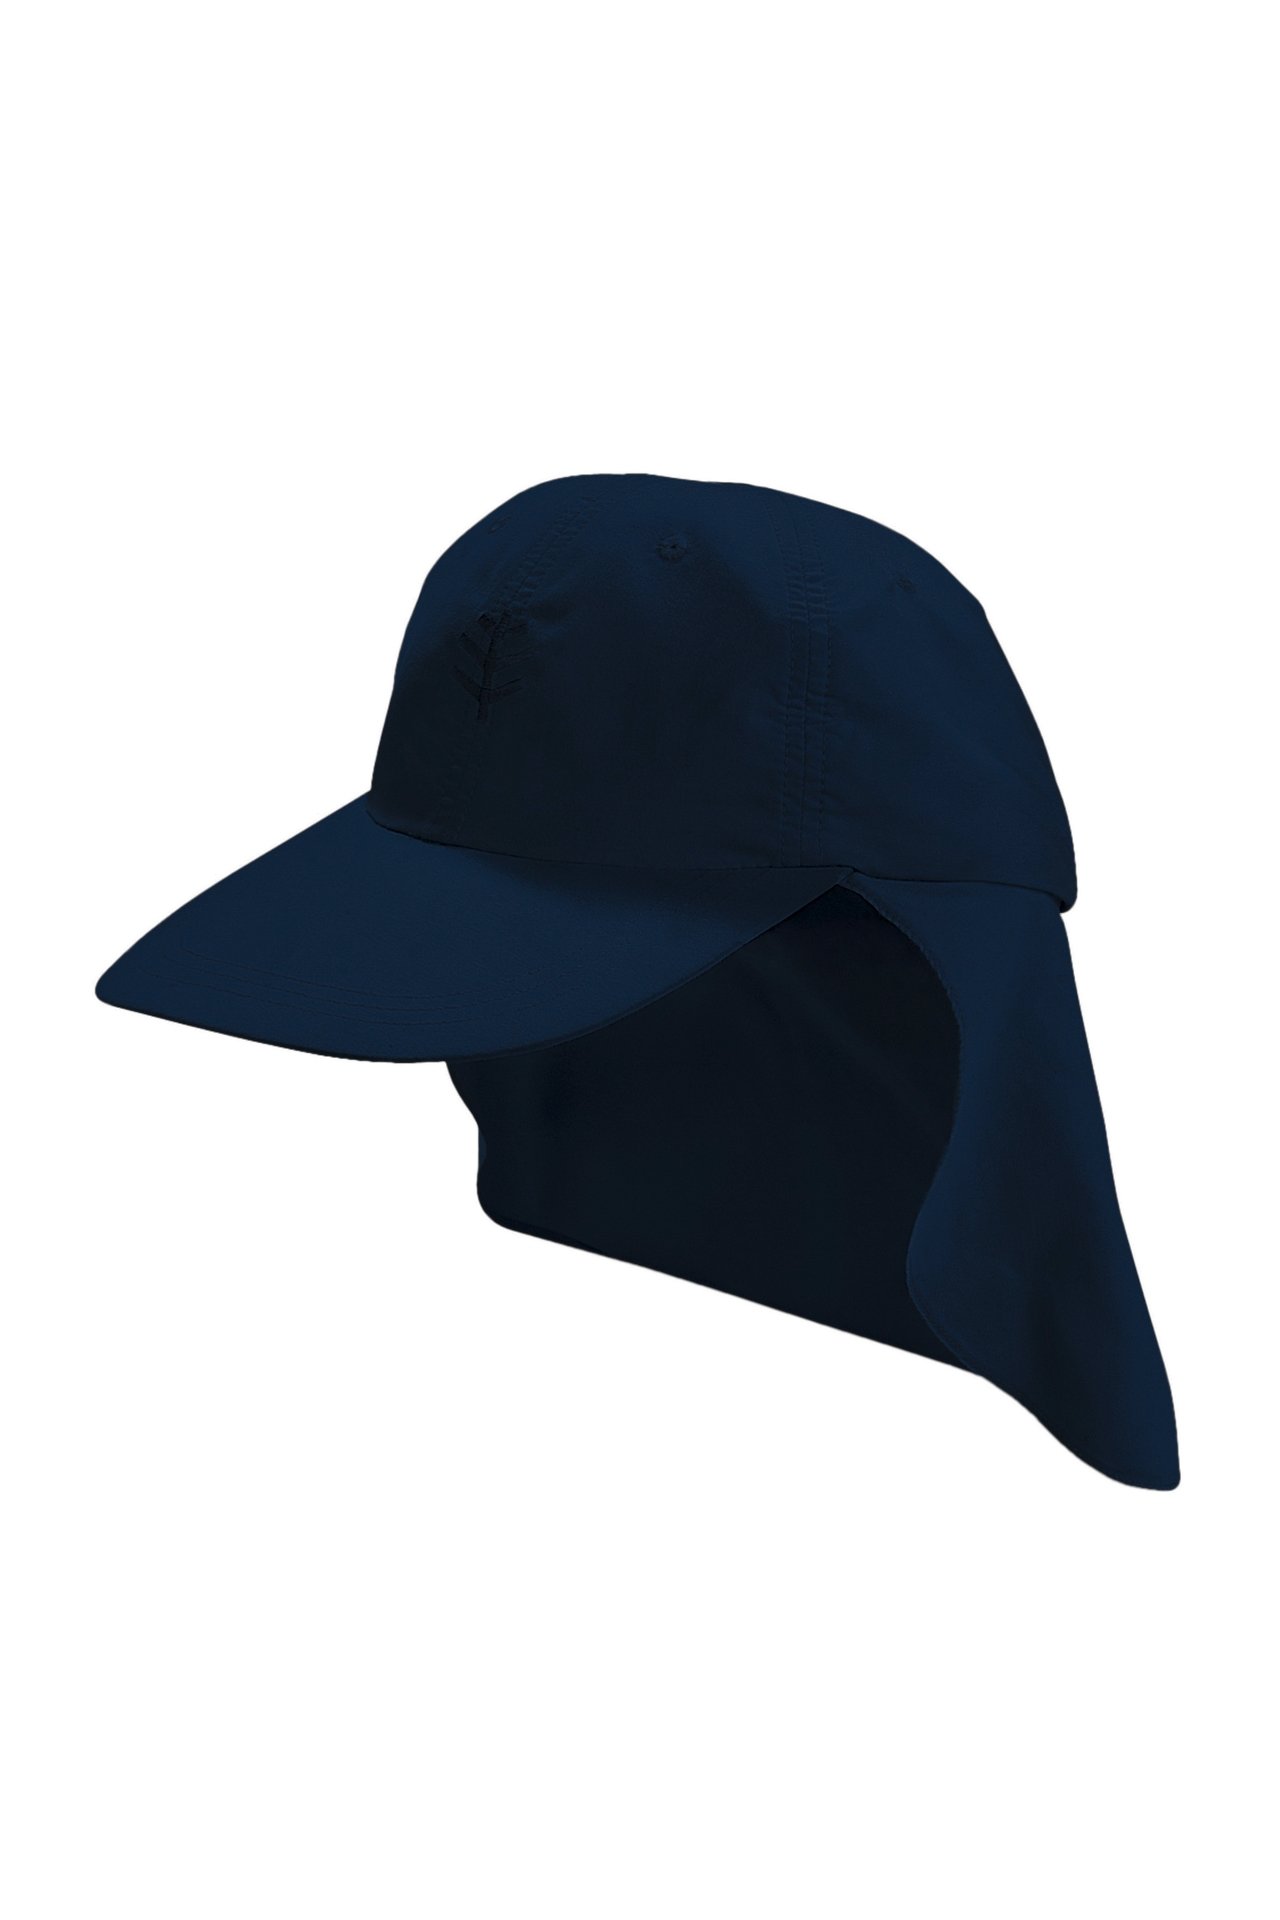 Coolibar - UV Sport Kappe mit Nackenschutz für Kinder - Alex - Navy